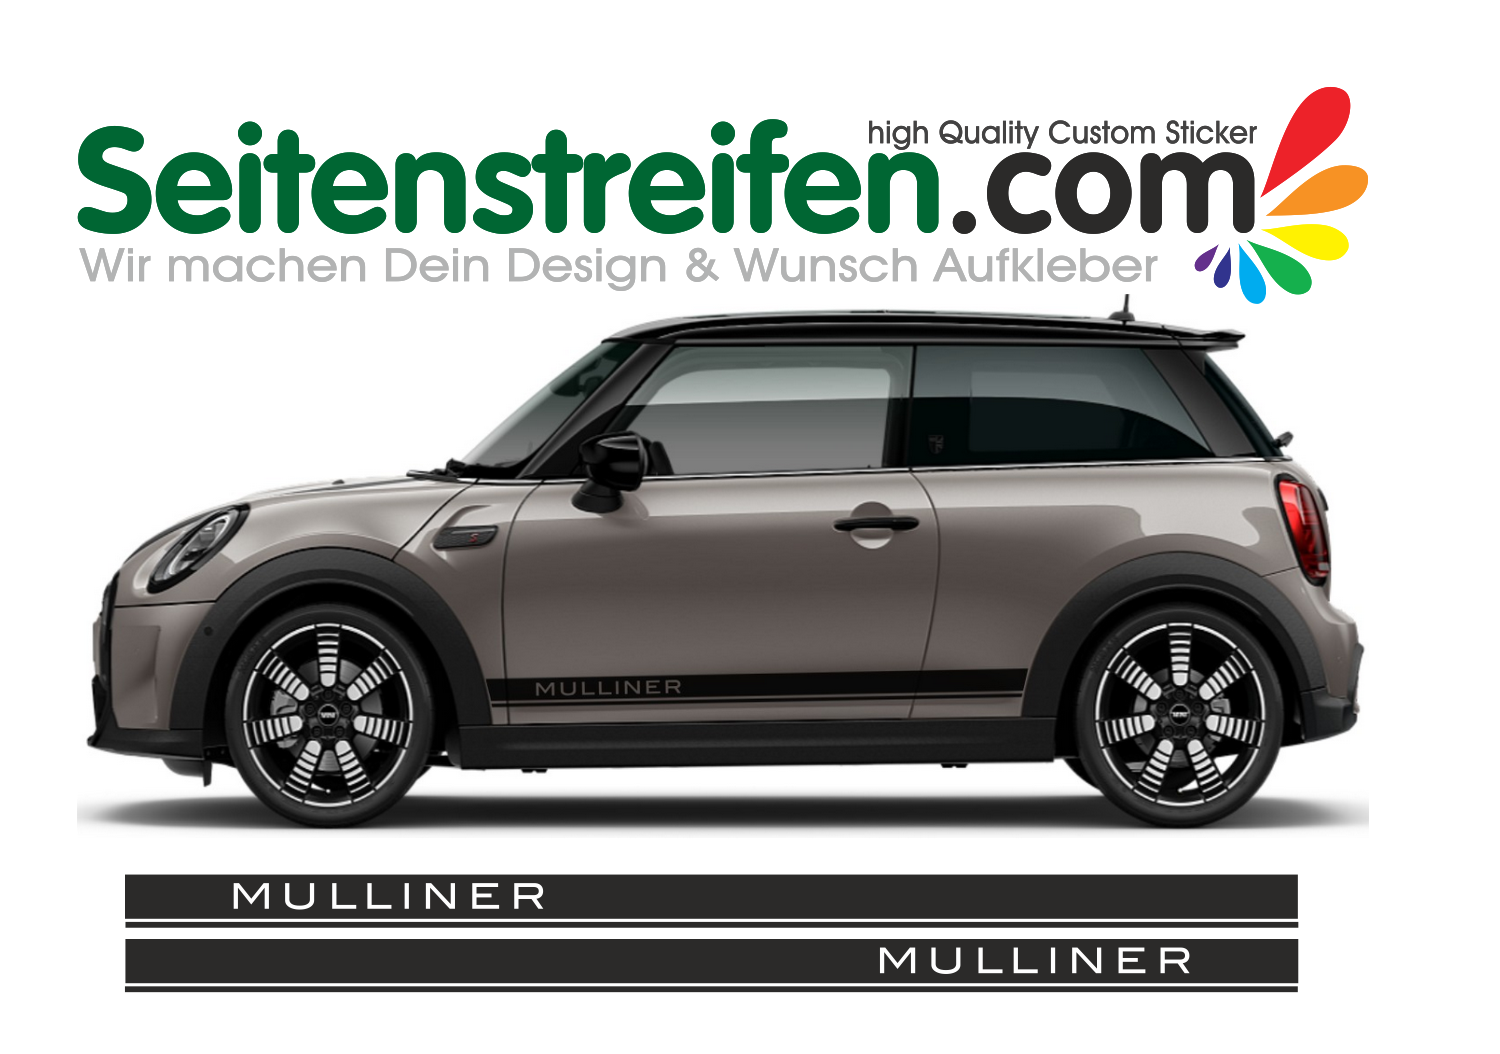 Mini - MULLINER - adesivi laterali adesive auto sticker